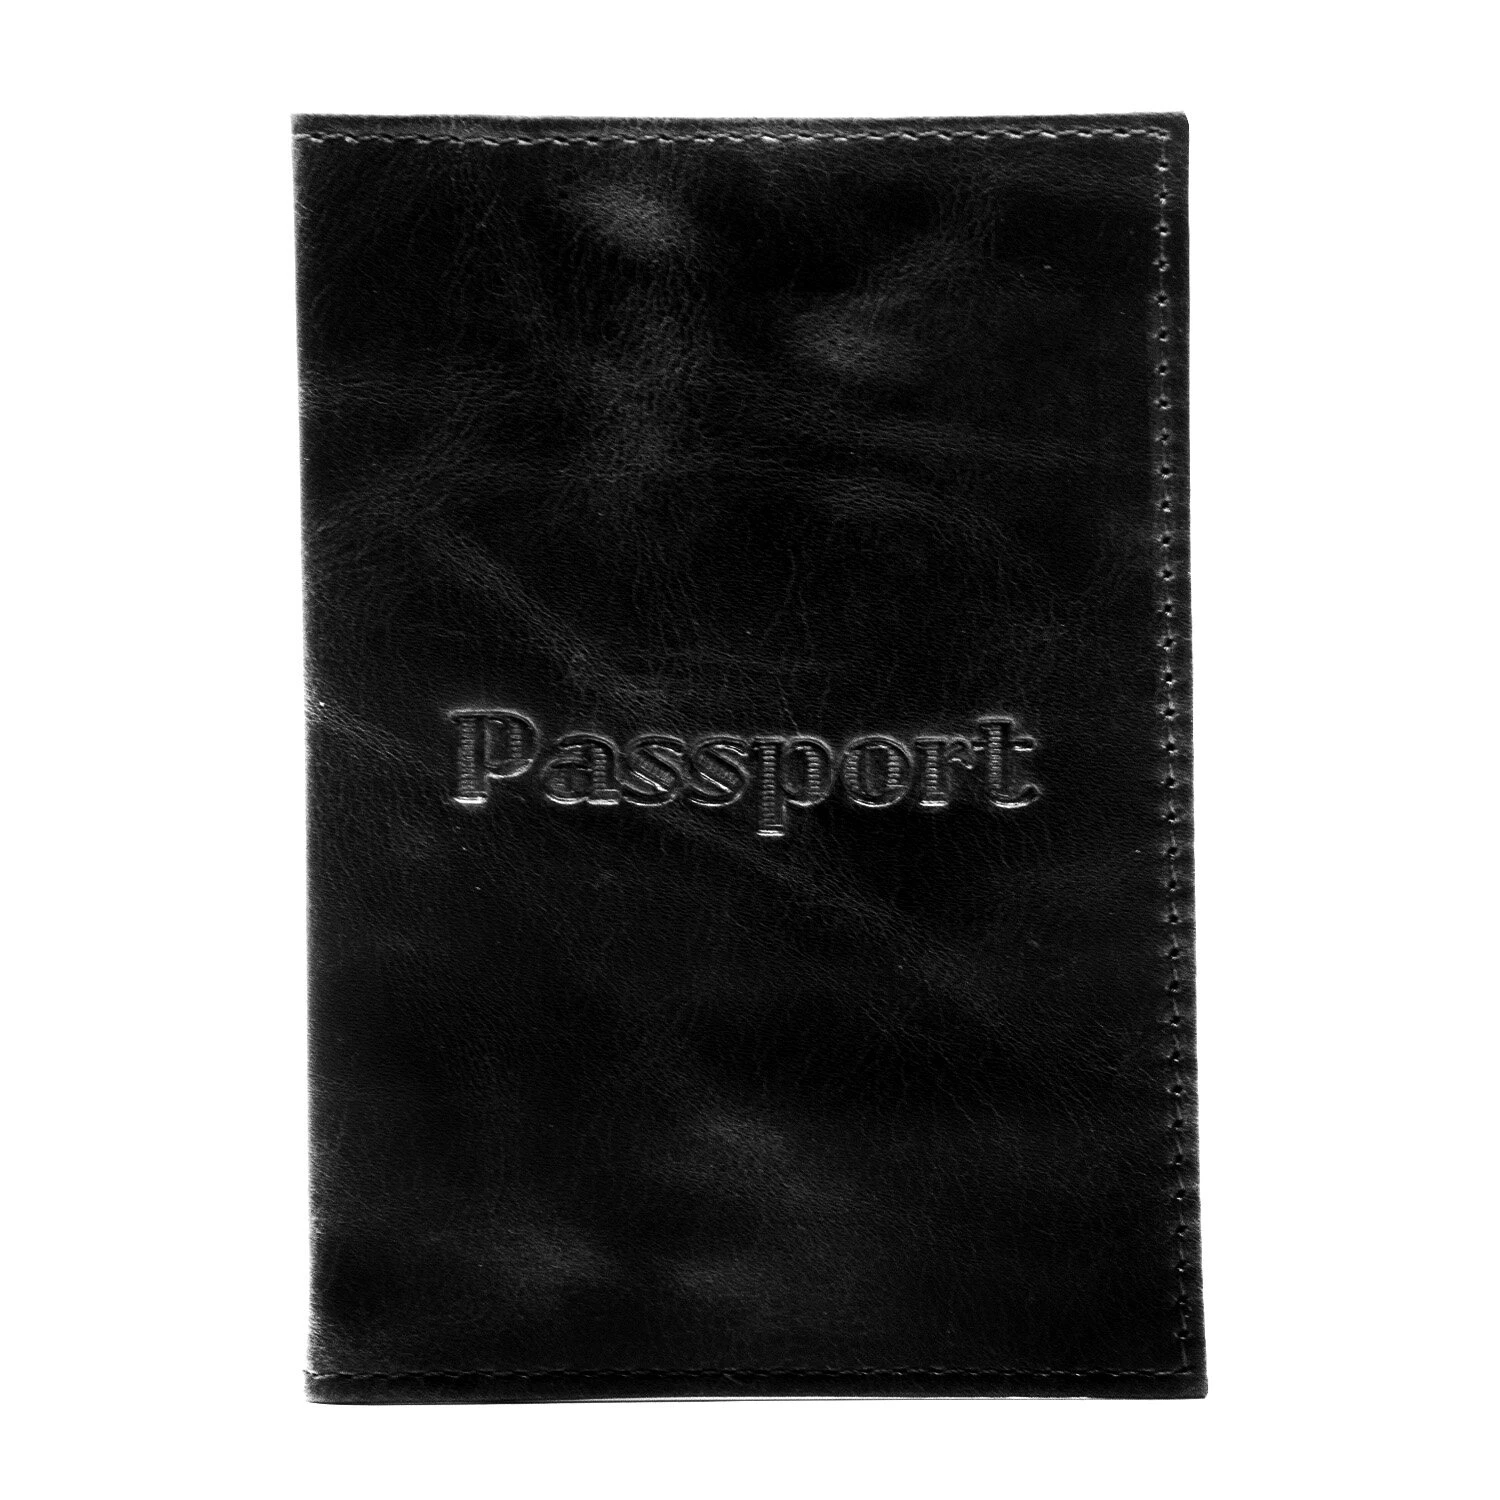 Обложка для паспорта натуральная кожа пулап, "Passport", кожаные